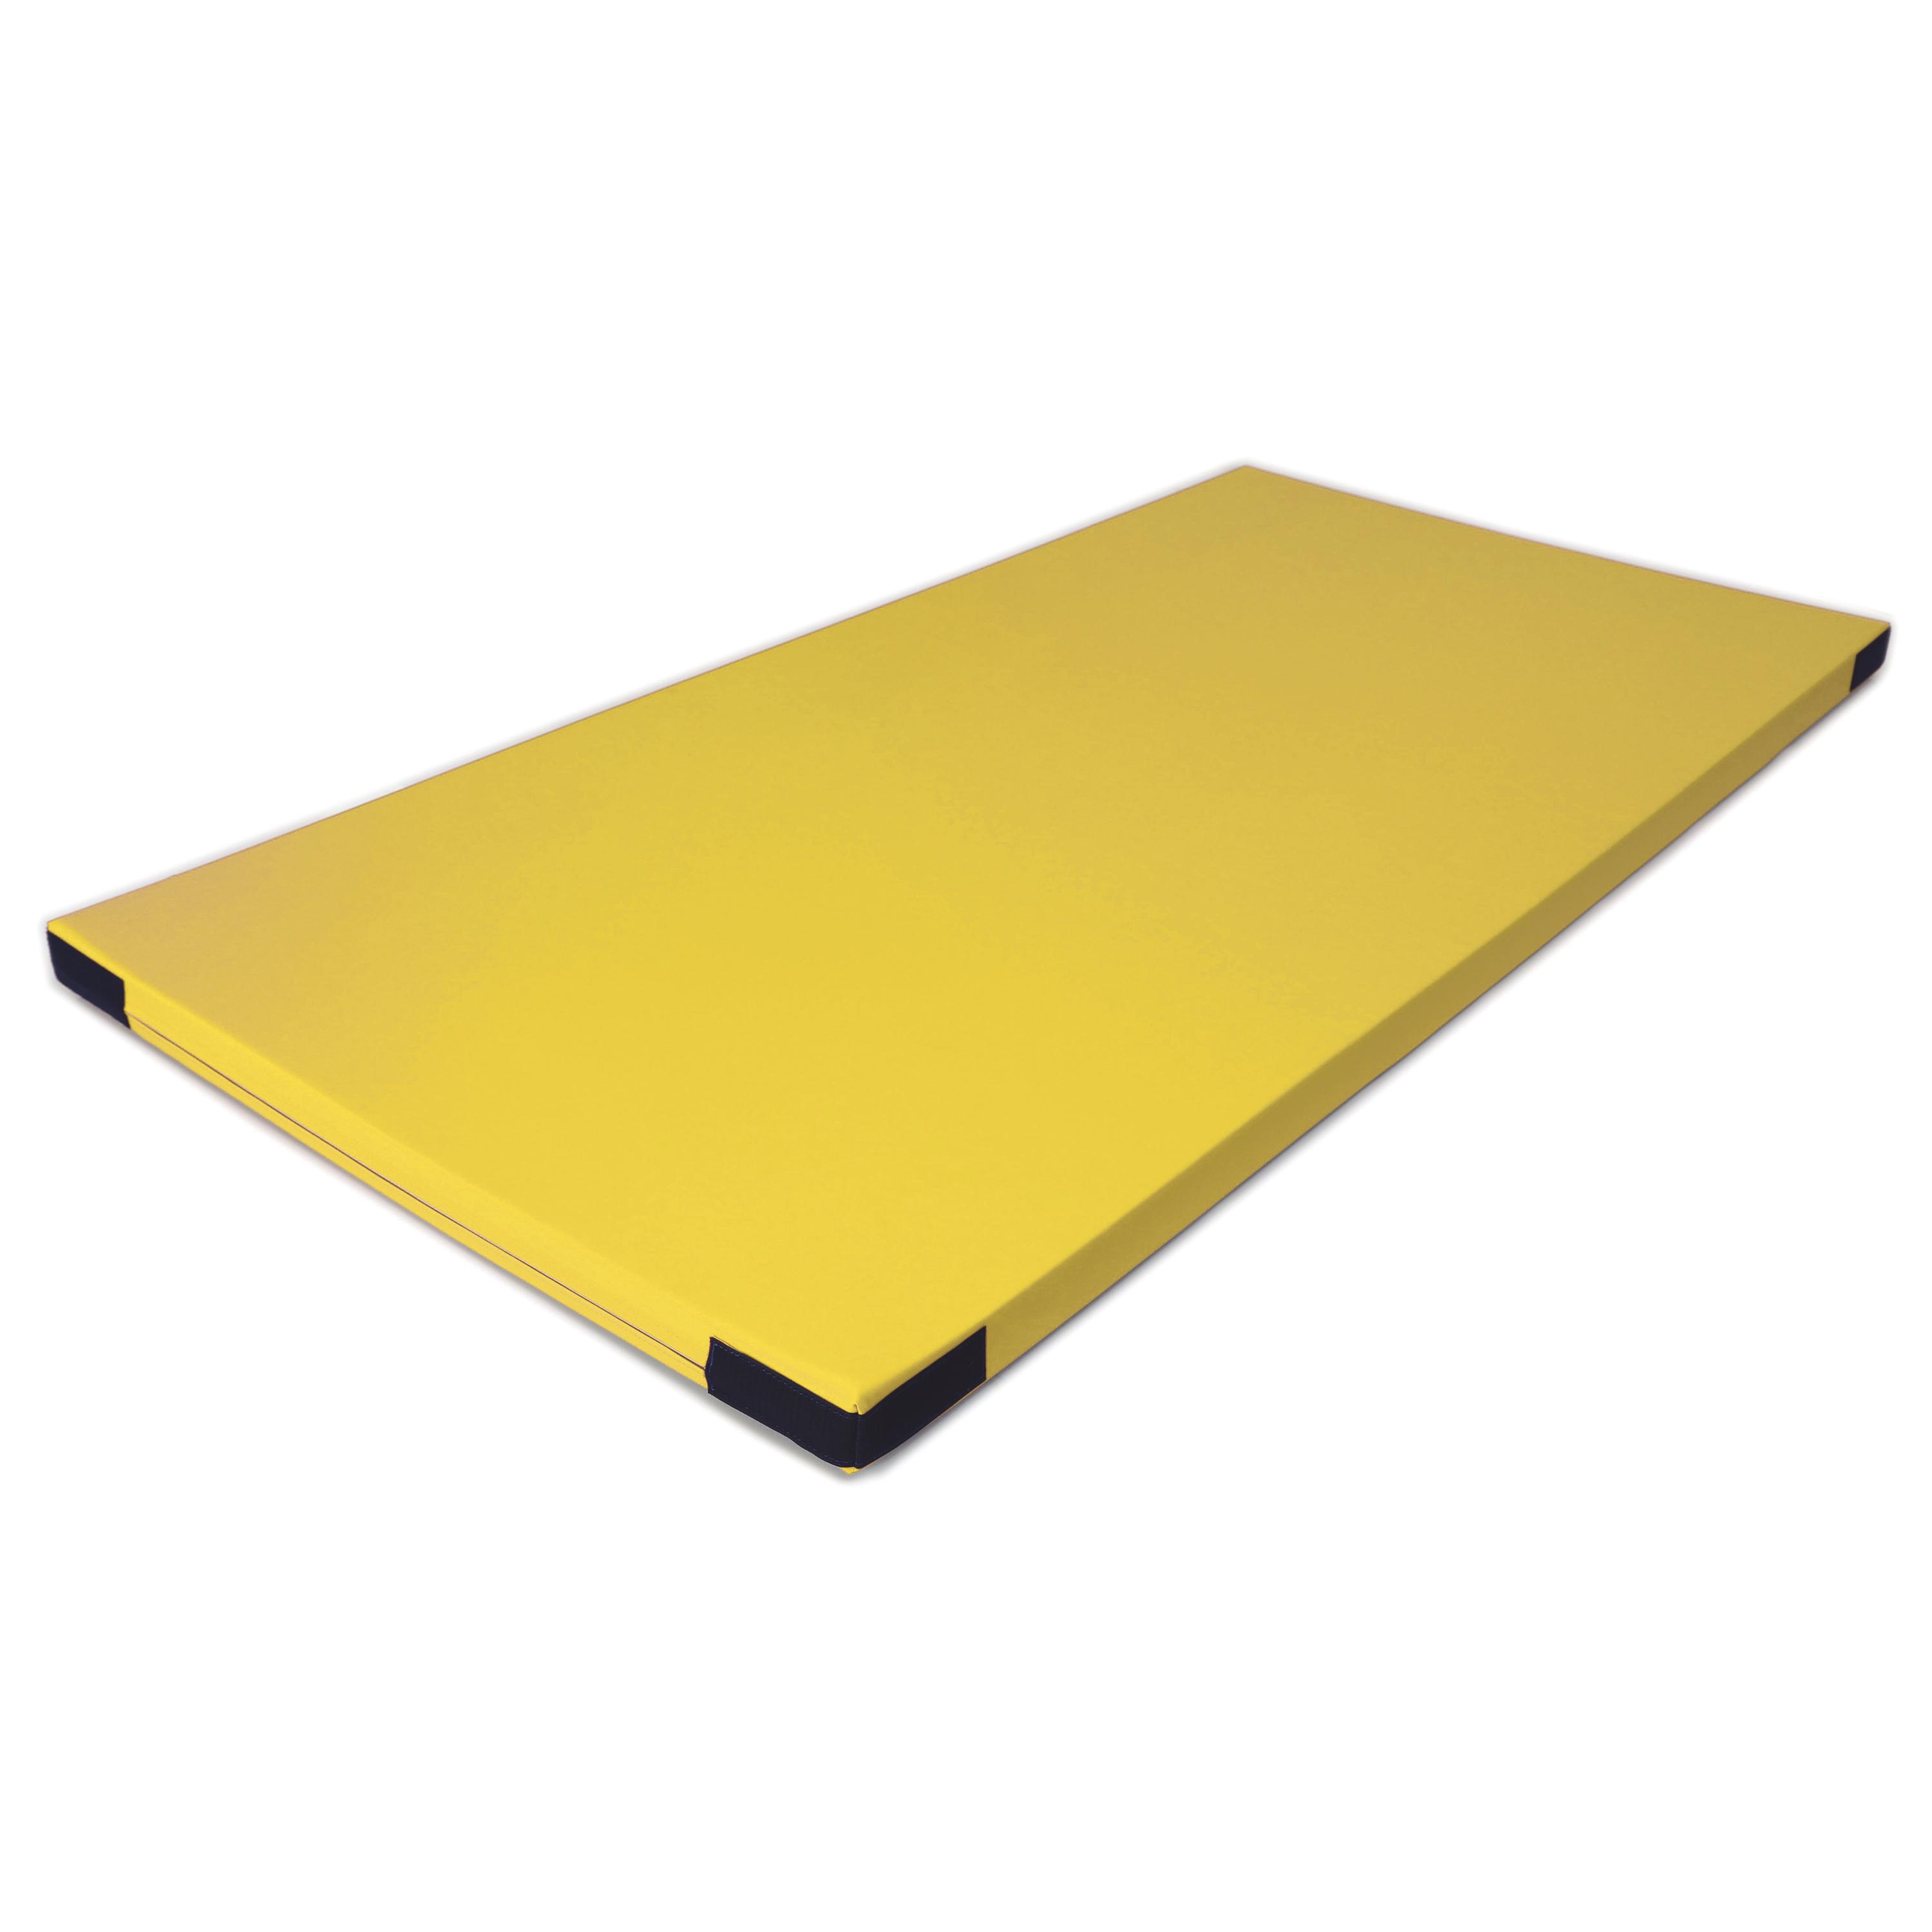 Fallschutzmatte Superleicht 'gelb' Klett, 150 x 100 cm